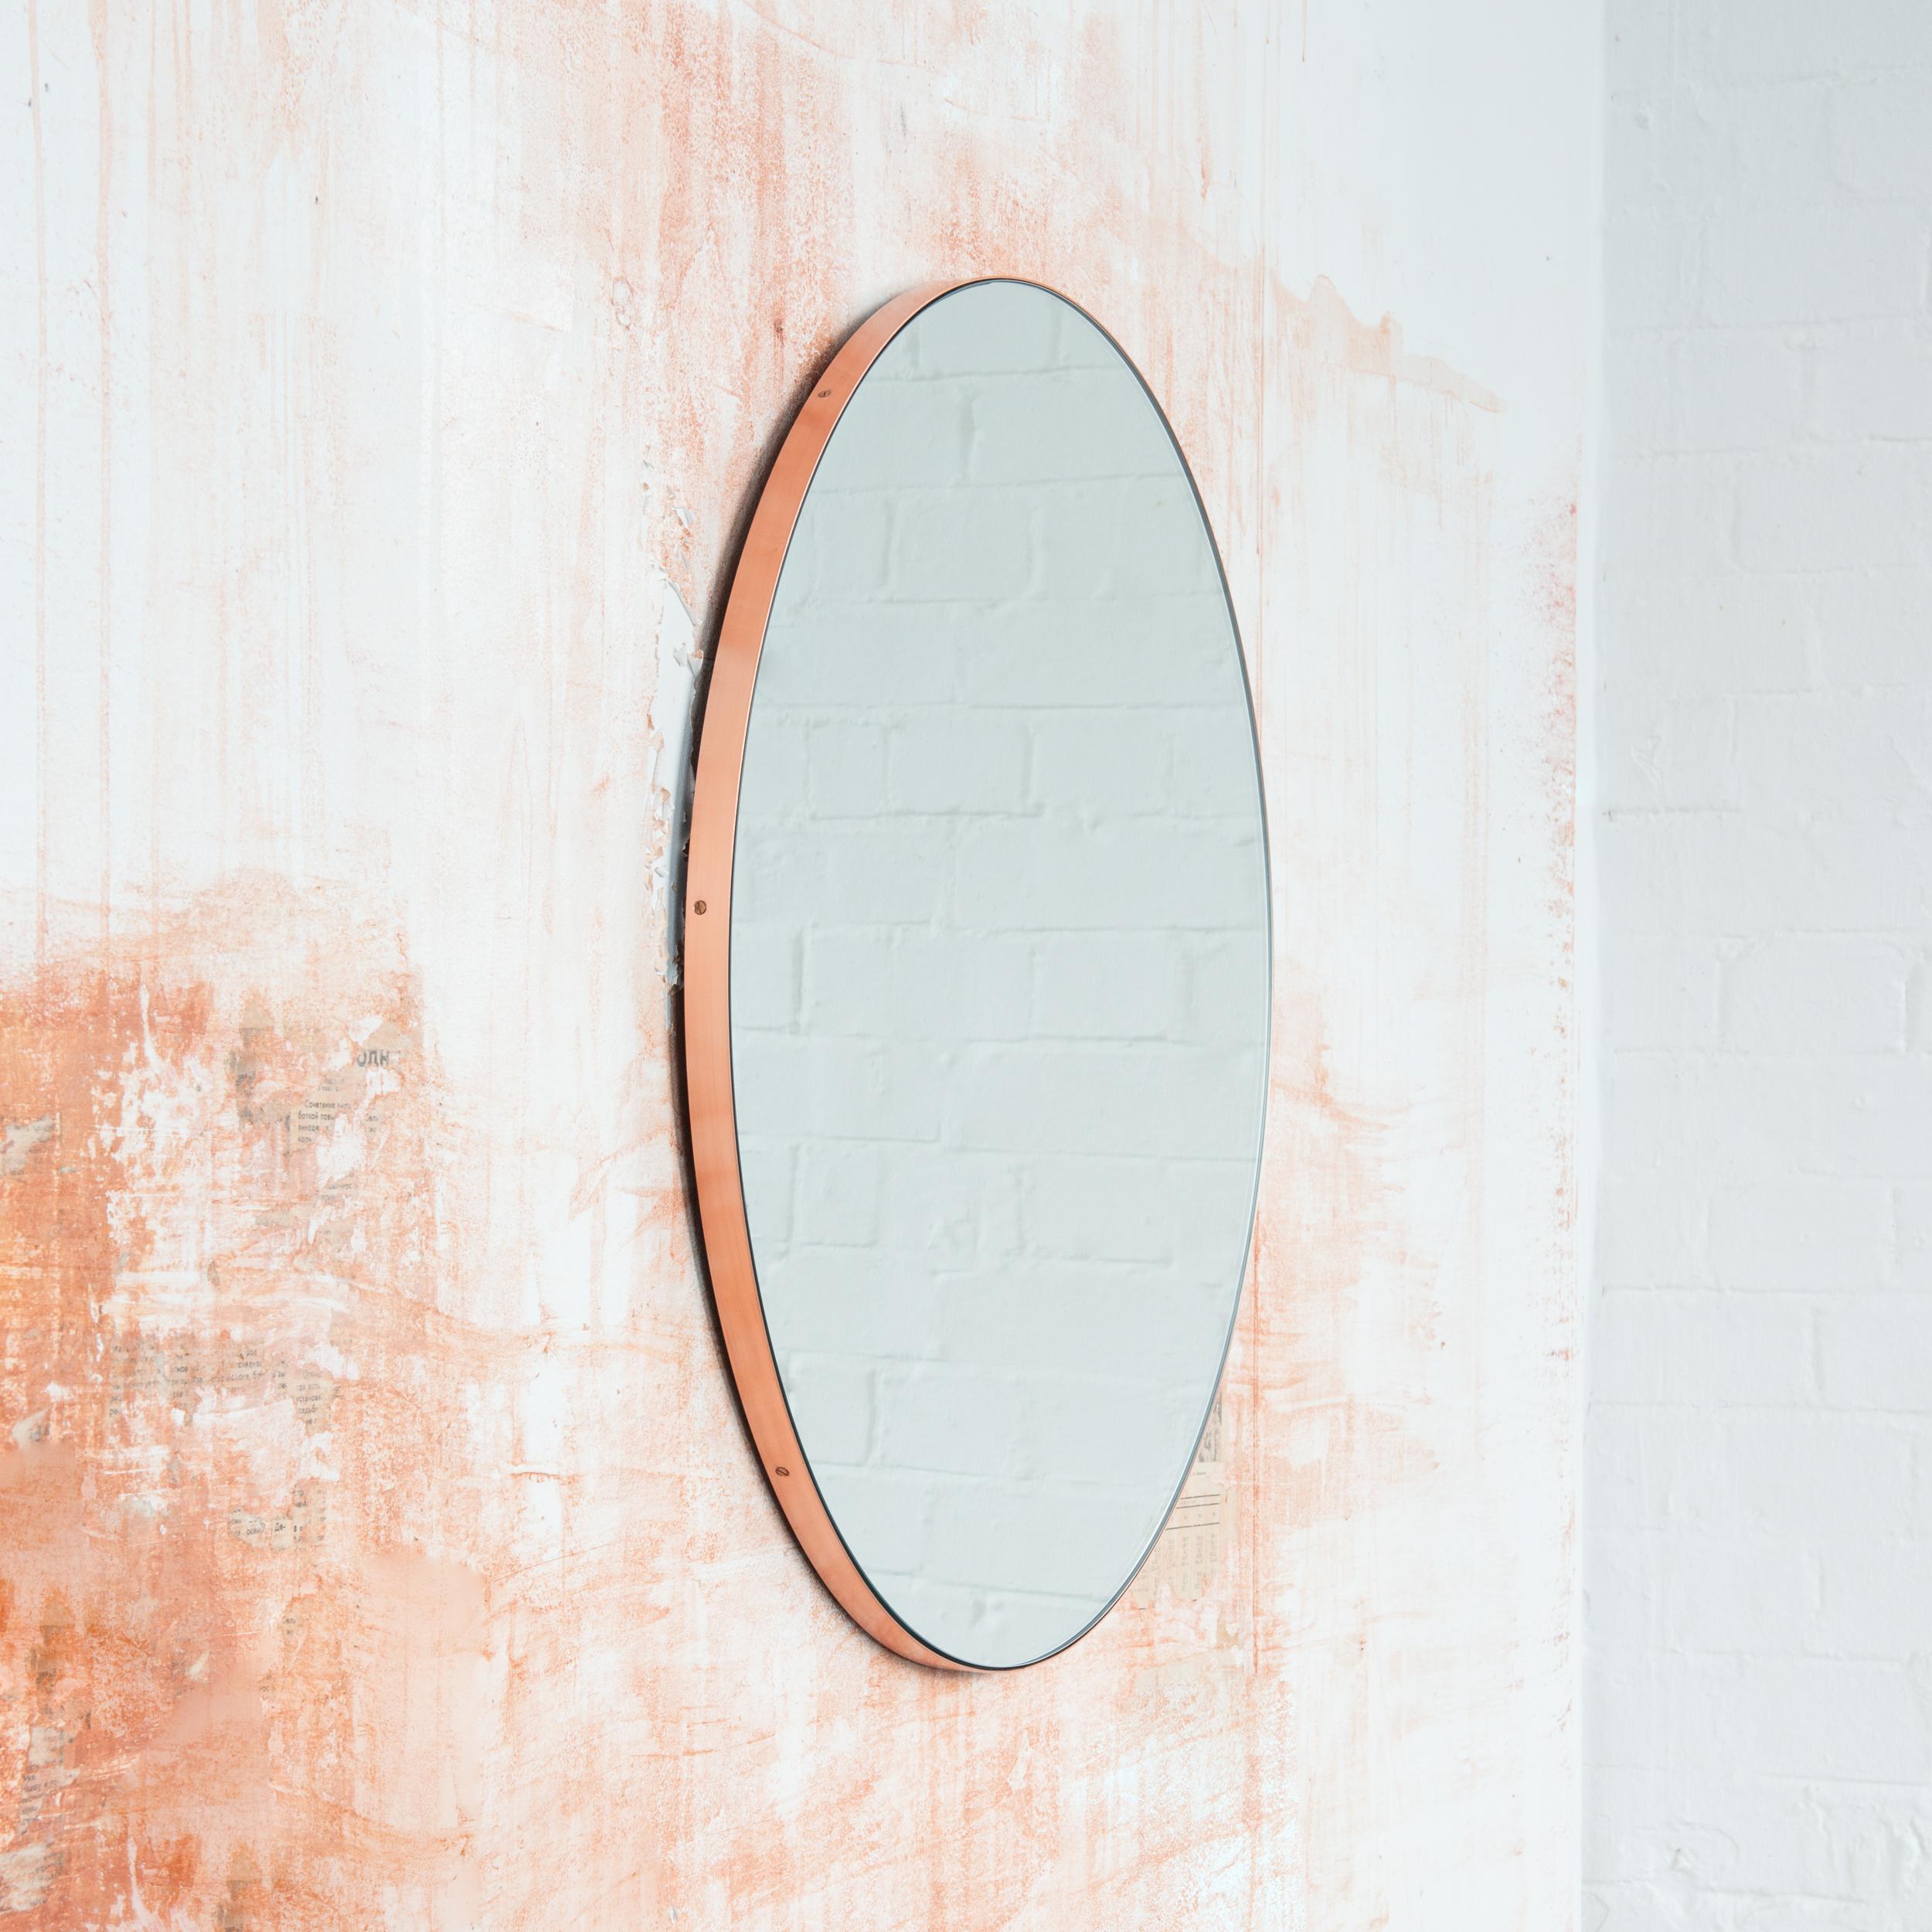 Minimalistischer runder Spiegel mit einem eleganten Rahmen aus gebürstetem Kupfer. Die Details und die Verarbeitung, einschließlich der sichtbaren verkupferten Schrauben, unterstreichen die handwerkliche Qualität des Spiegels, ein echtes